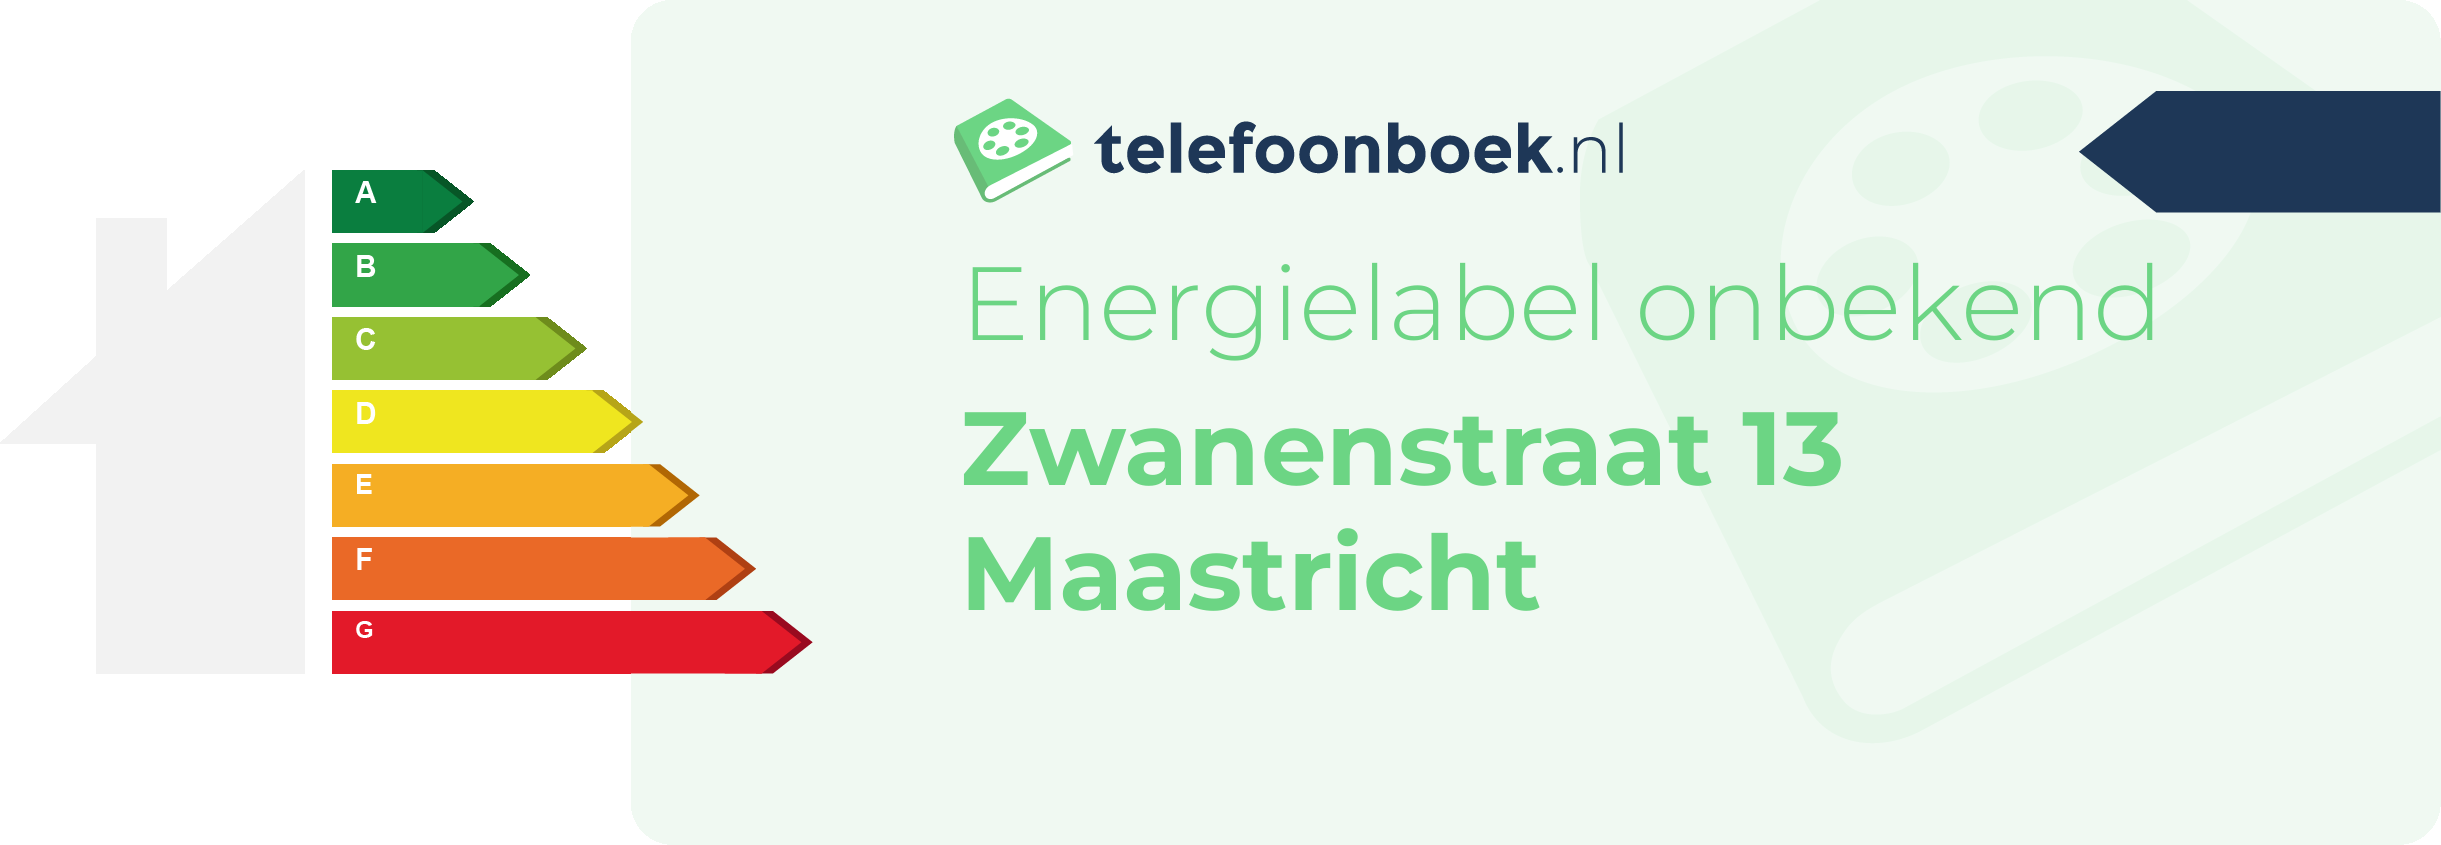 Energielabel Zwanenstraat 13 Maastricht